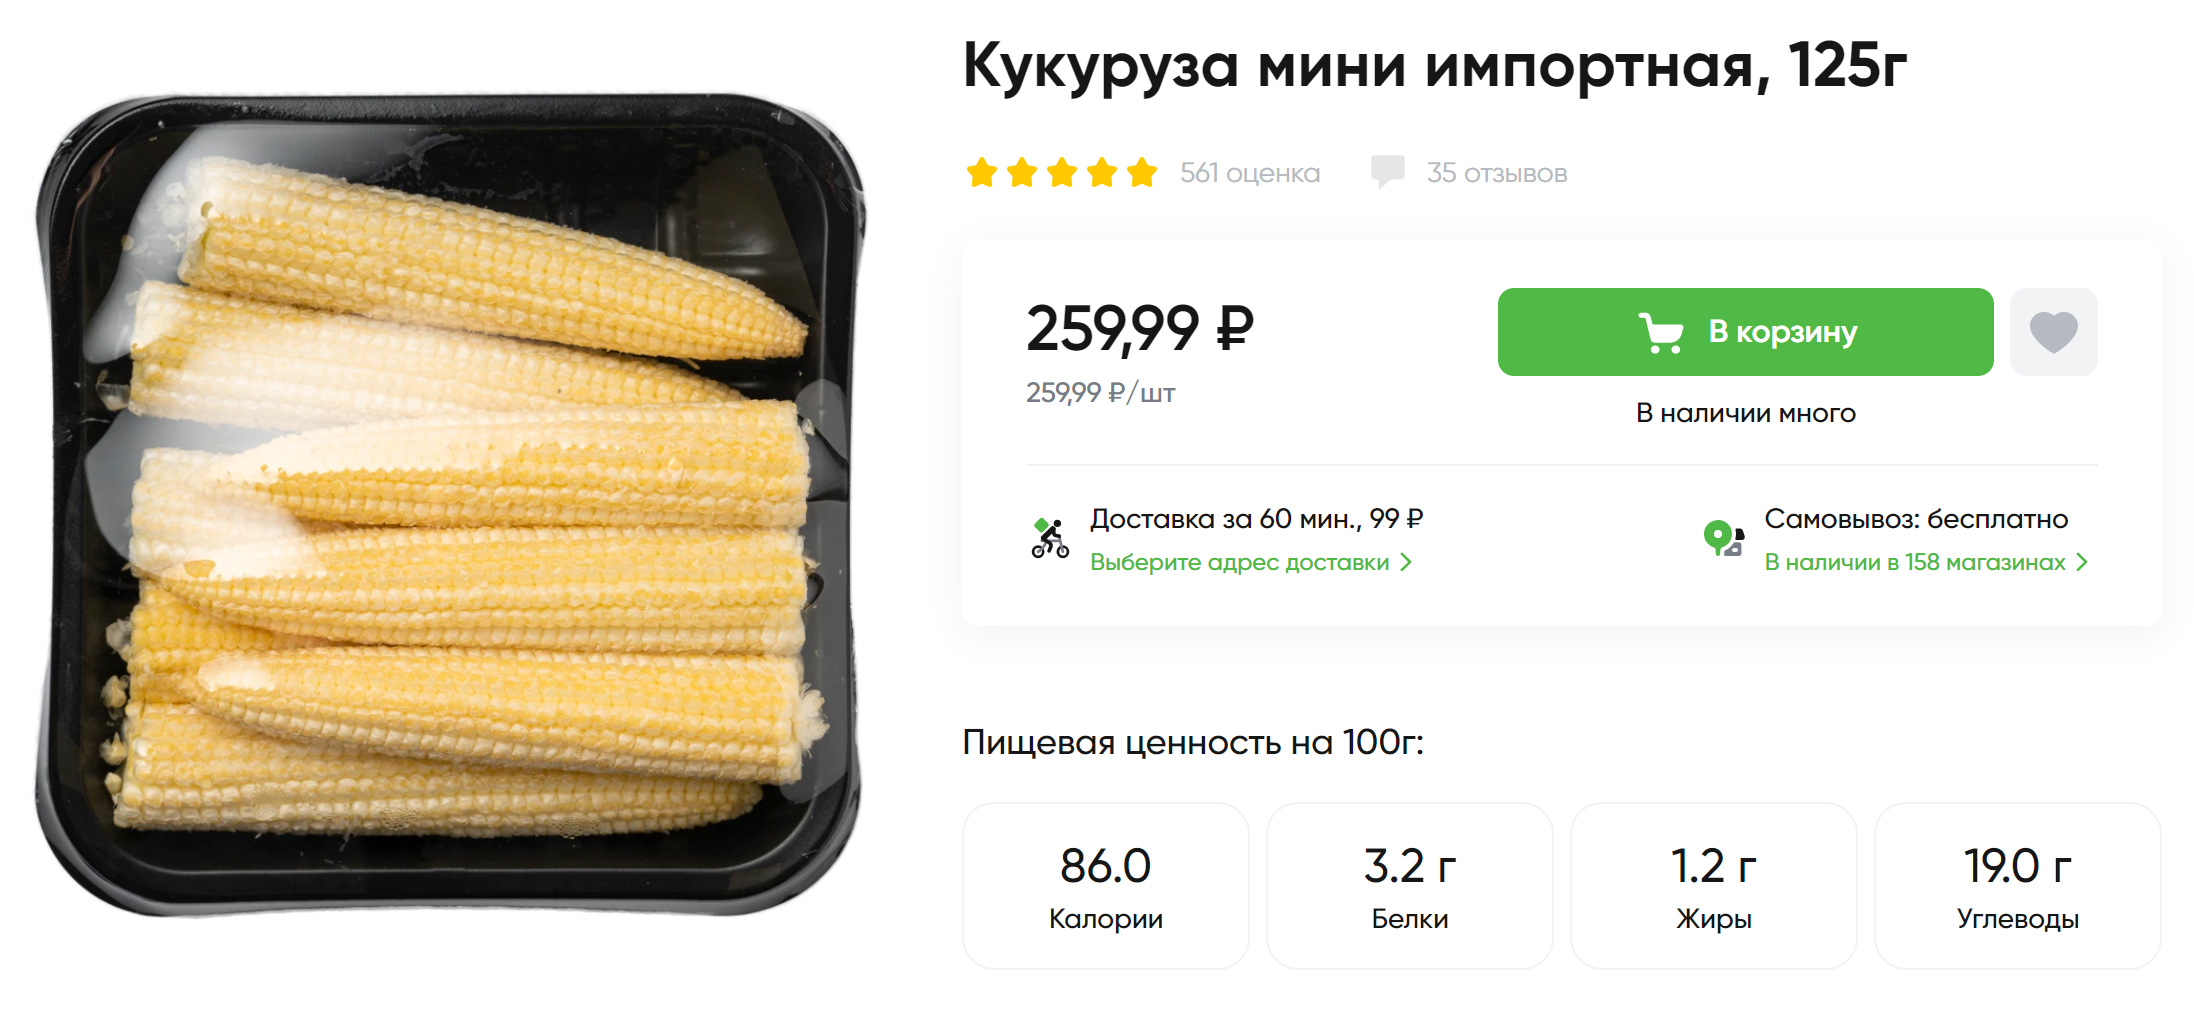 Мини-кукуруза продается в небольших пачках. Источник: perekrestok.ru